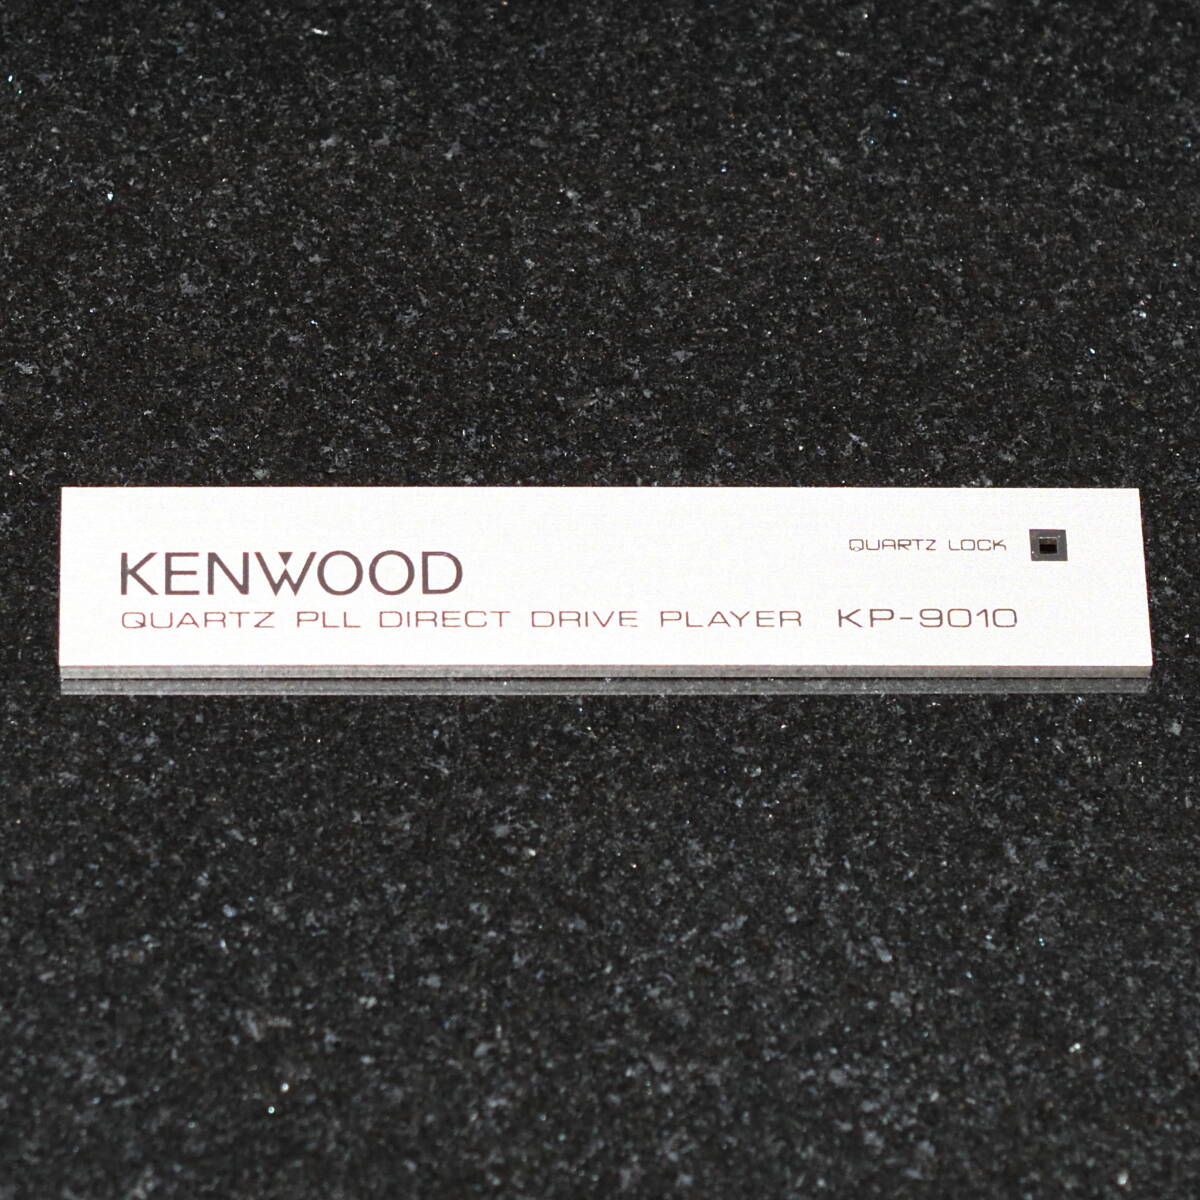 KENWOOD KP-9010 スイッチ プレート ③QUARTZ LOCK / KP-990 KP-7010 KP-1100の画像1